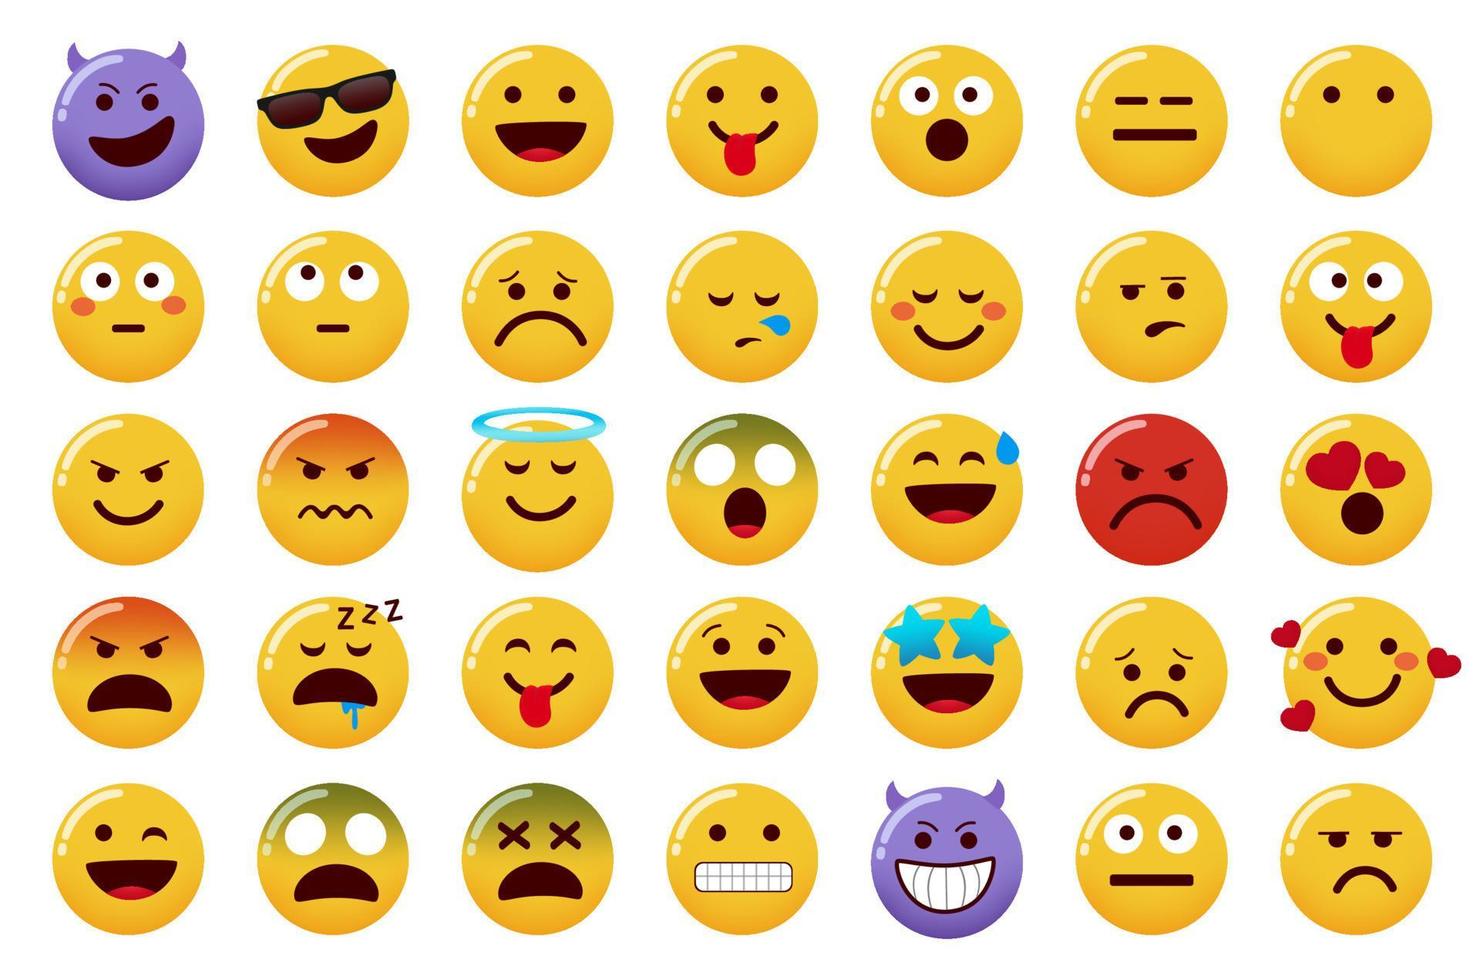 emoticon emojis vektoruppsättning. uttryckssymboler karaktär isolerad i vit bakgrund med leende, onda, arga och sjuka ansiktsuttryck för emoji tecken design. vektor illustration.